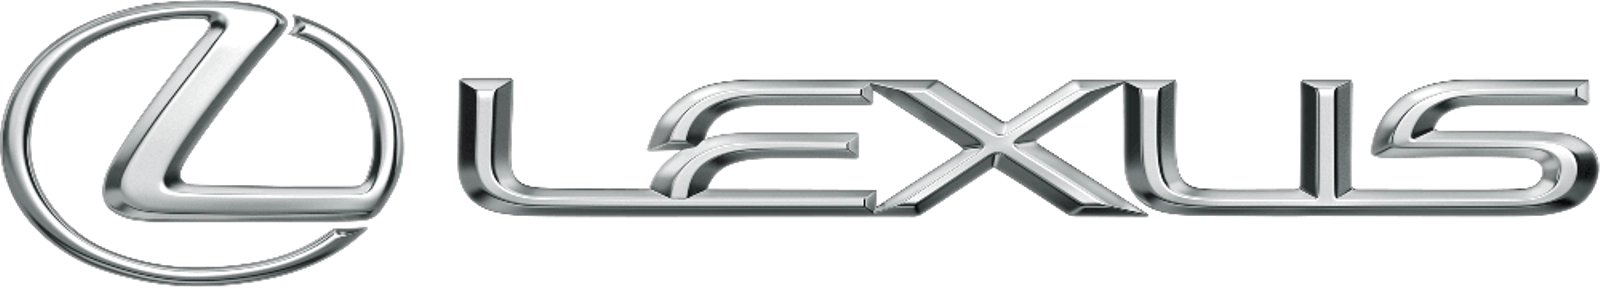 логотип Lexus